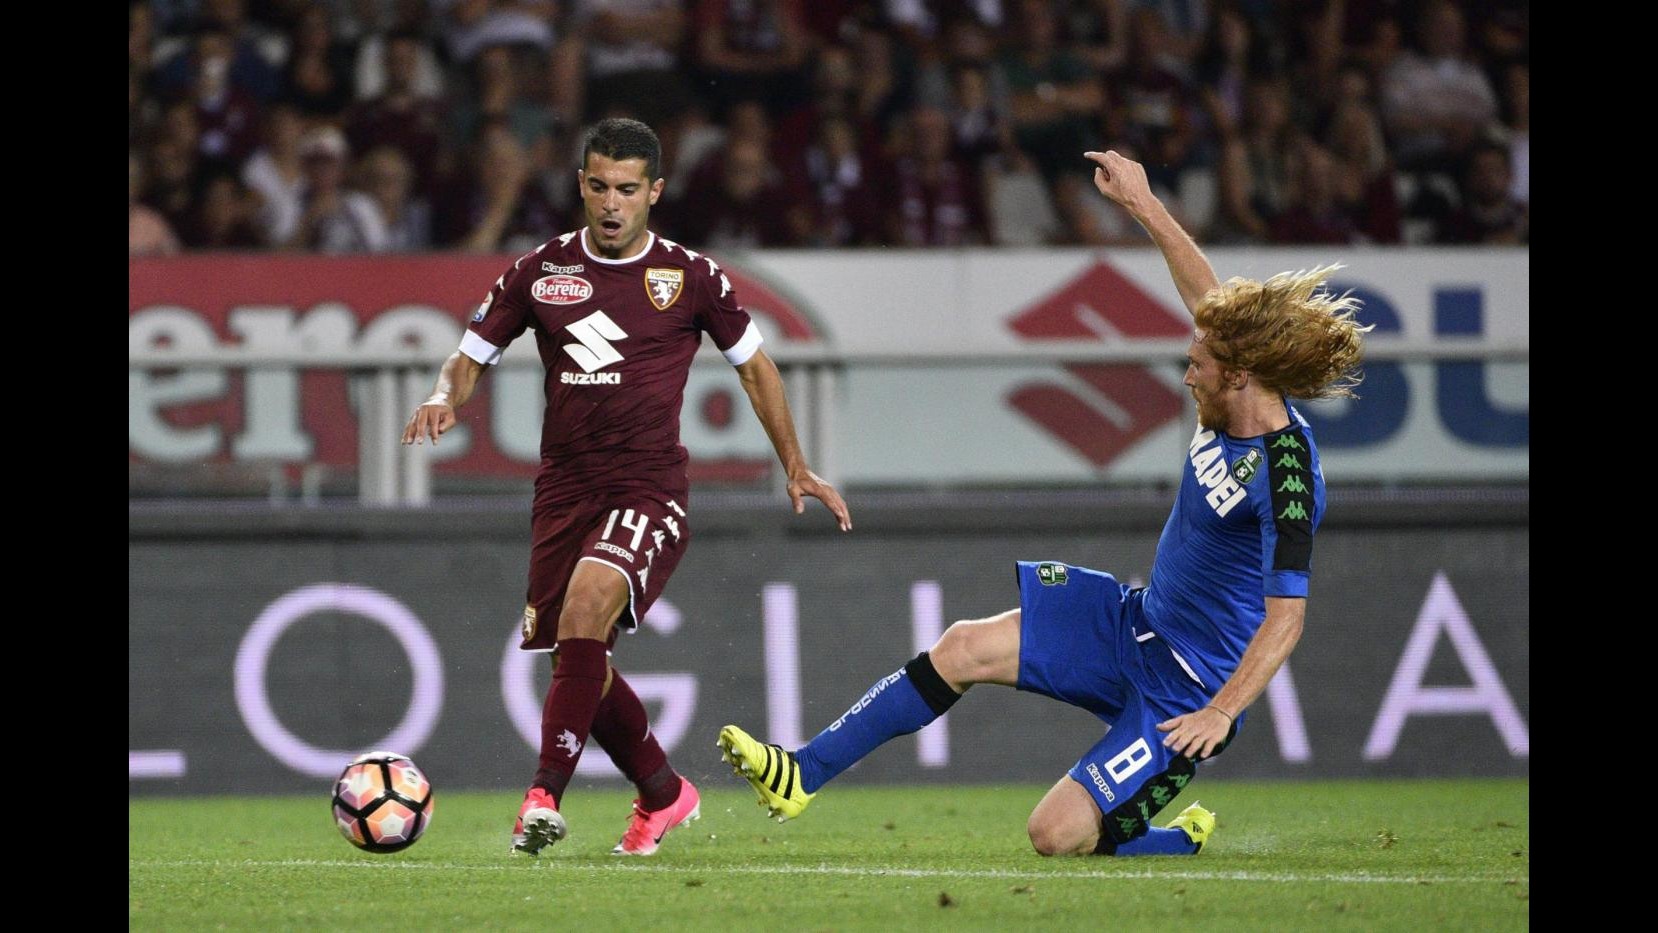 FOTO Serie A, festa del gol tra Torino-Sassuolo: finisce 5-3